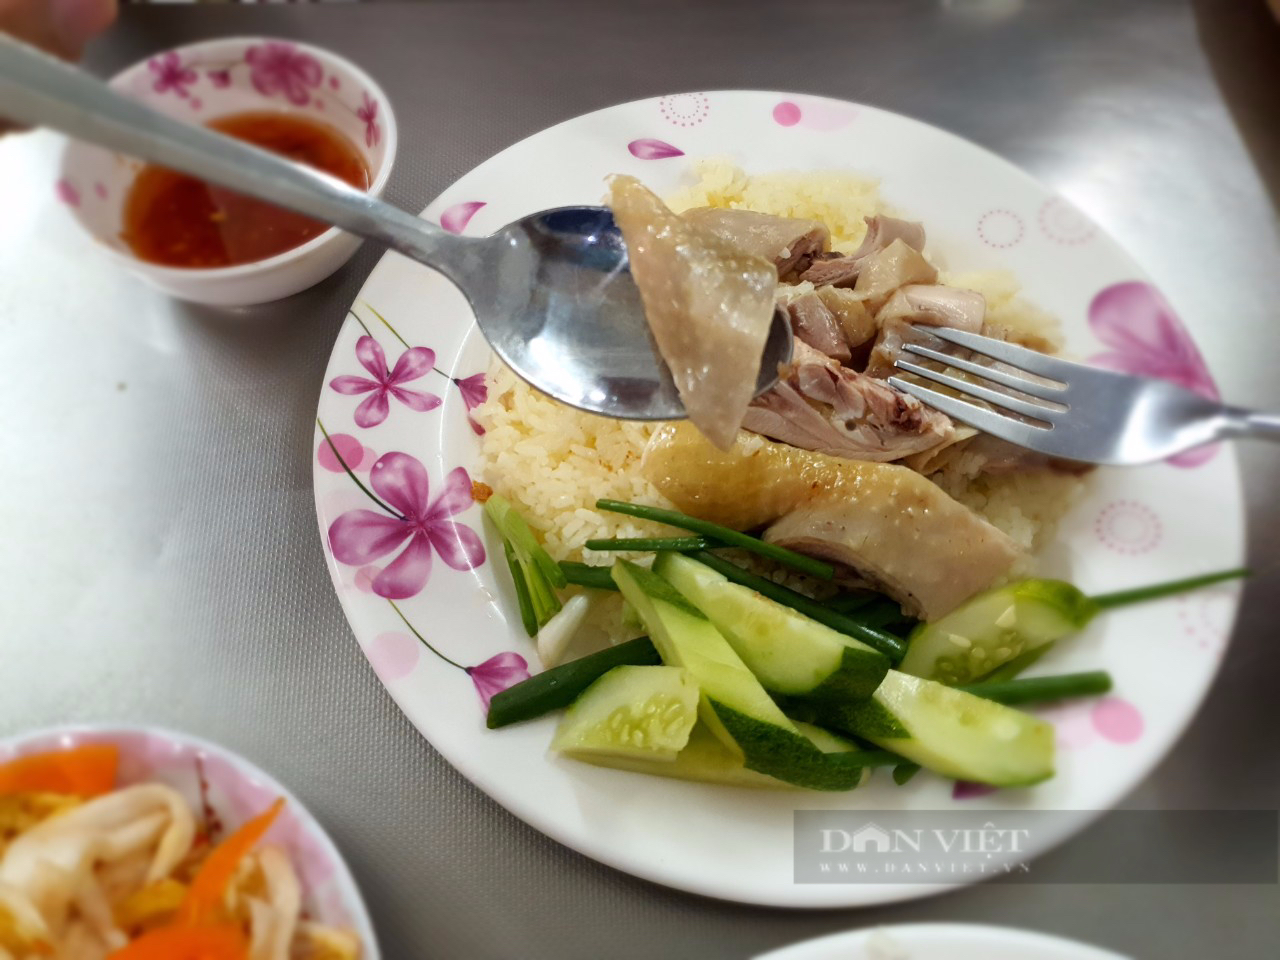 Quán cơm gà nổi tiếng khu Tân Định, ngoài gà luộc có cả heo quay, phá lấu, kimchi kiểu Việt Nam - Ảnh 1.